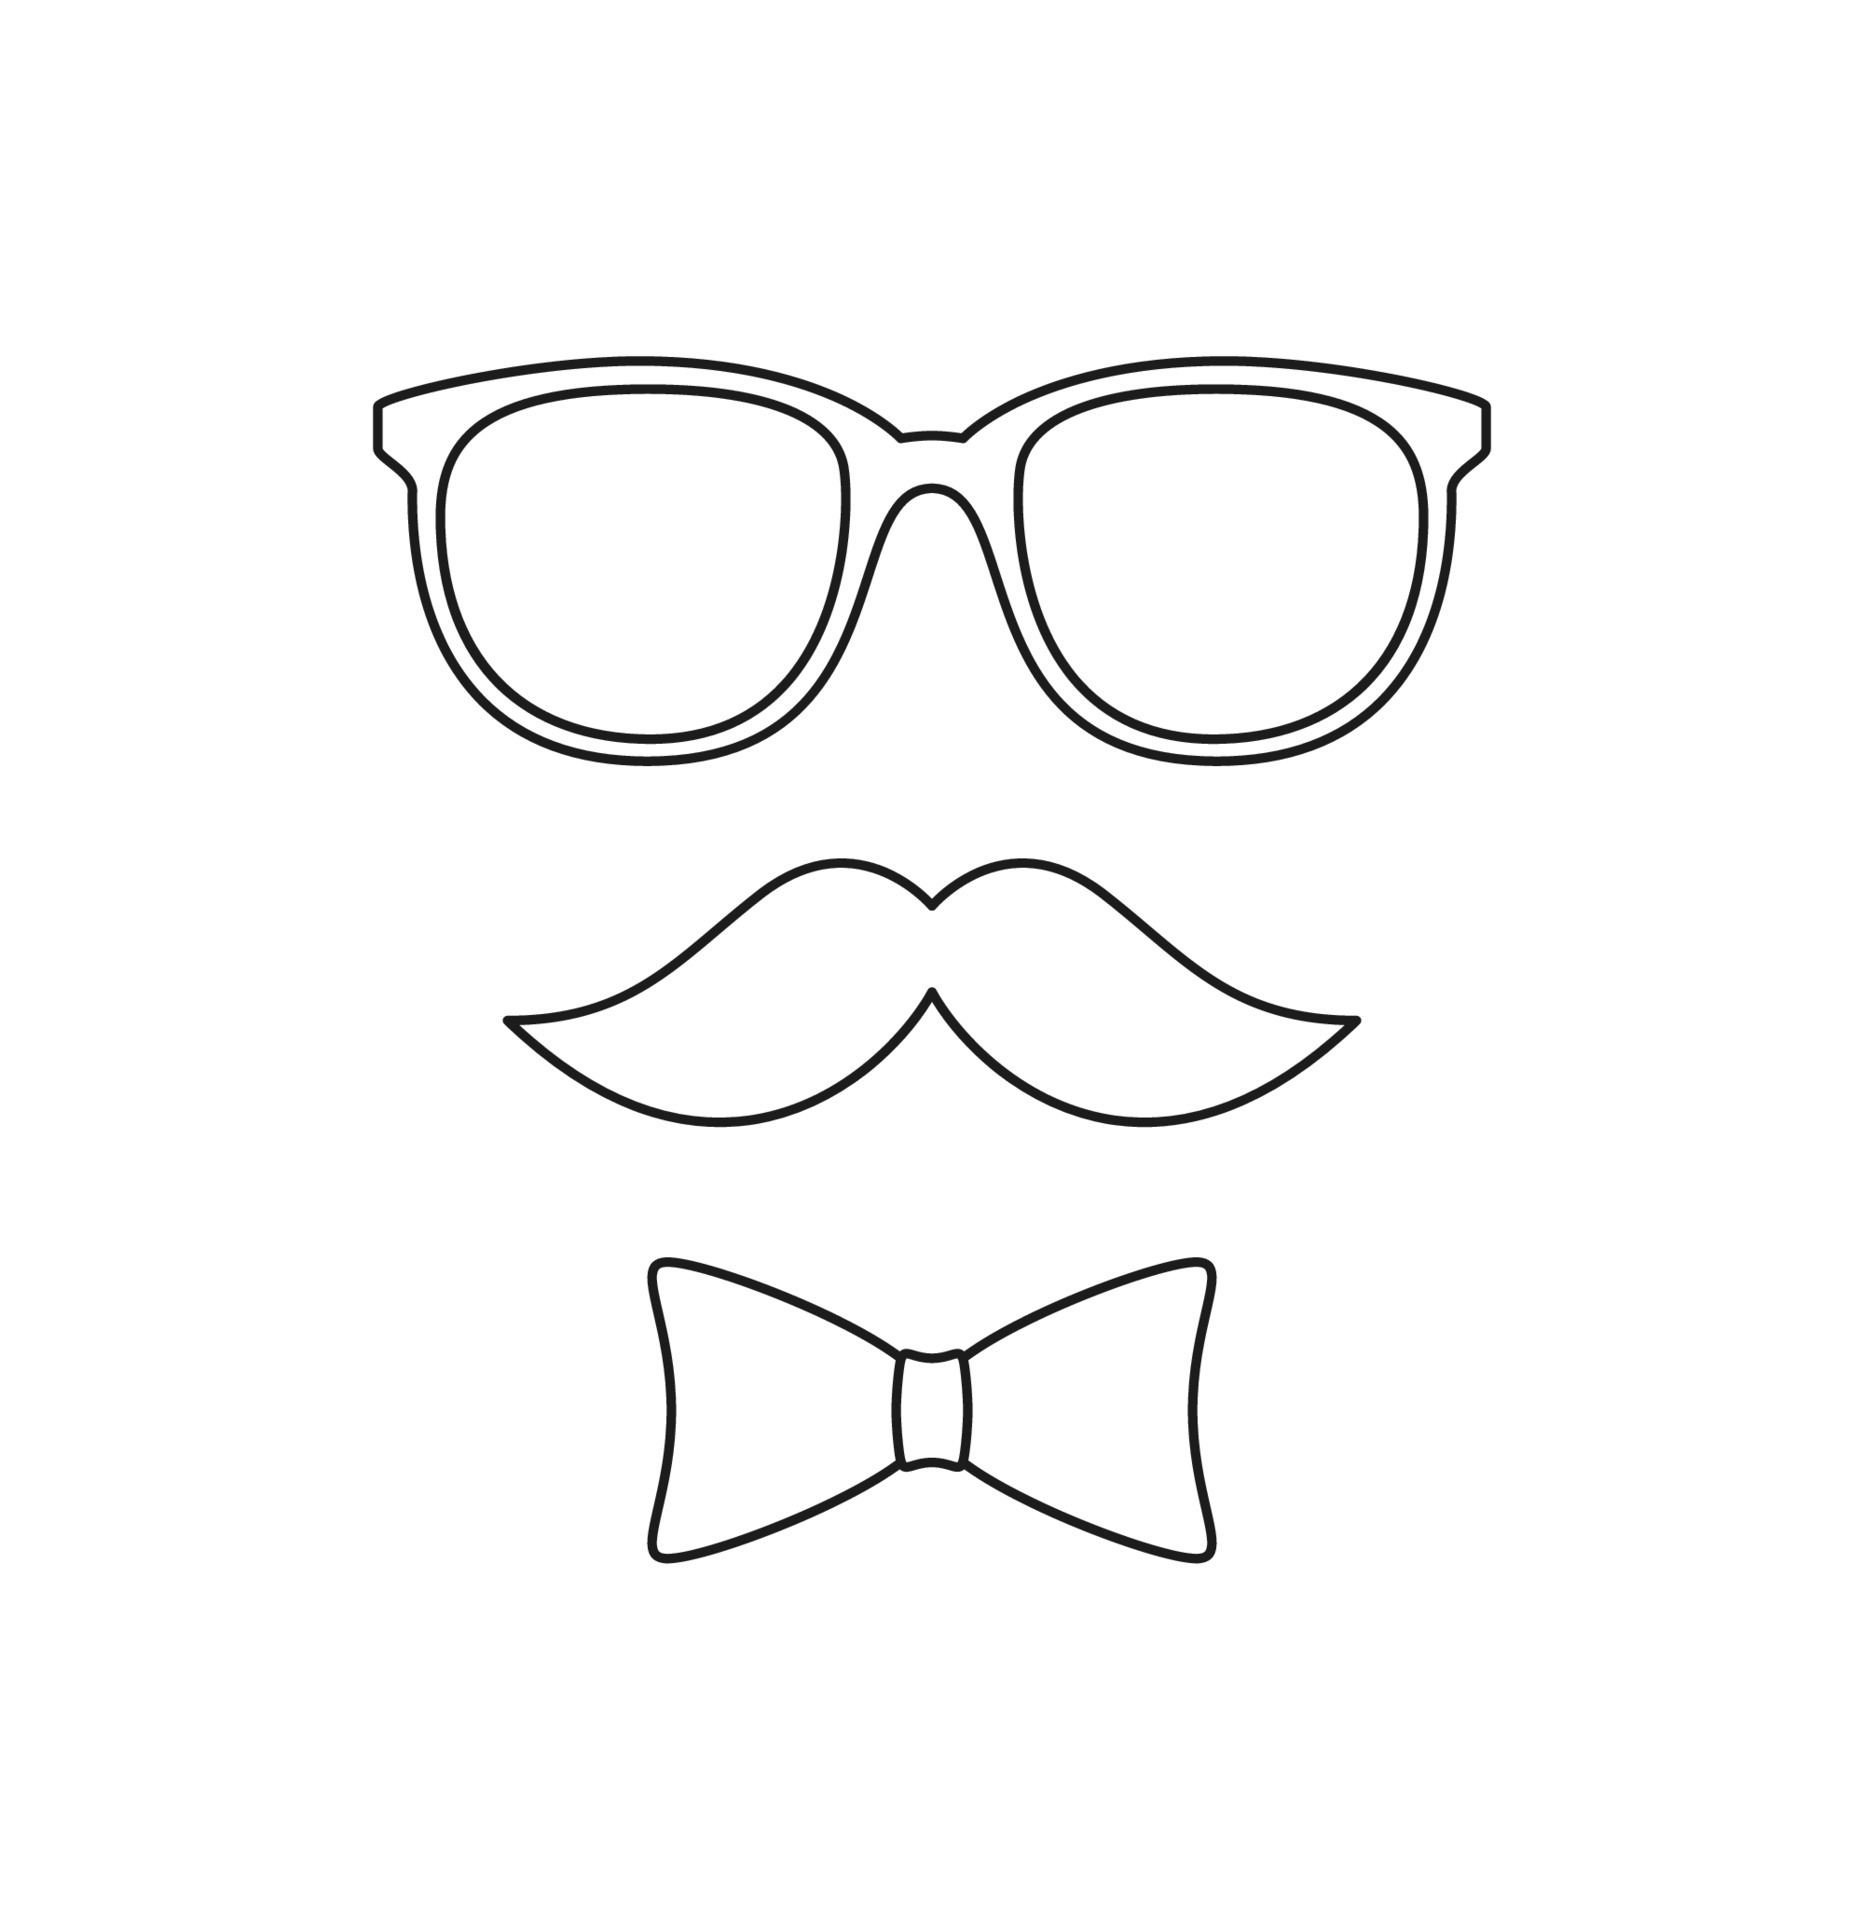 coloriage avec moustache, noeud papillon et lunettes pour enfants 9955087 -  Telecharger Vectoriel Gratuit, Clipart Graphique, Vecteur Dessins et  Pictogramme Gratuit